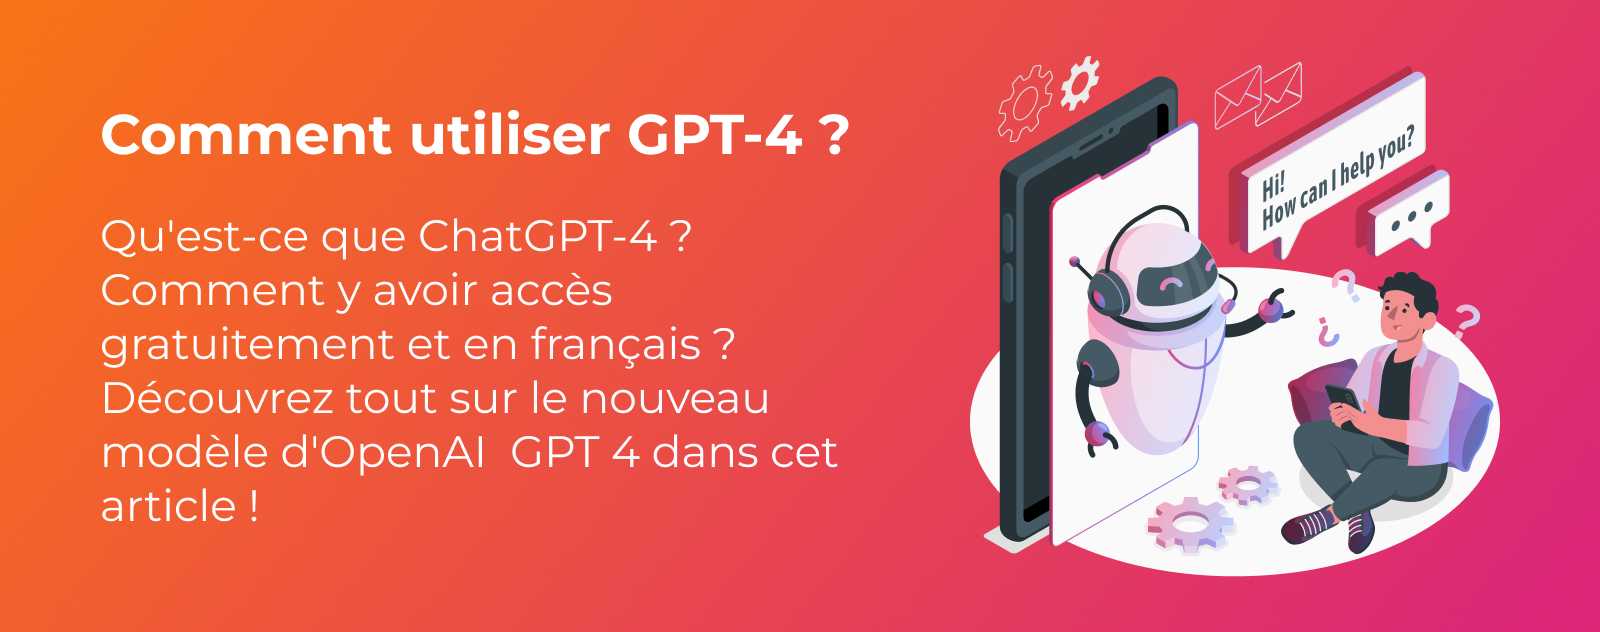 Comment utiliser GPT-4 en français ? Le guide complet